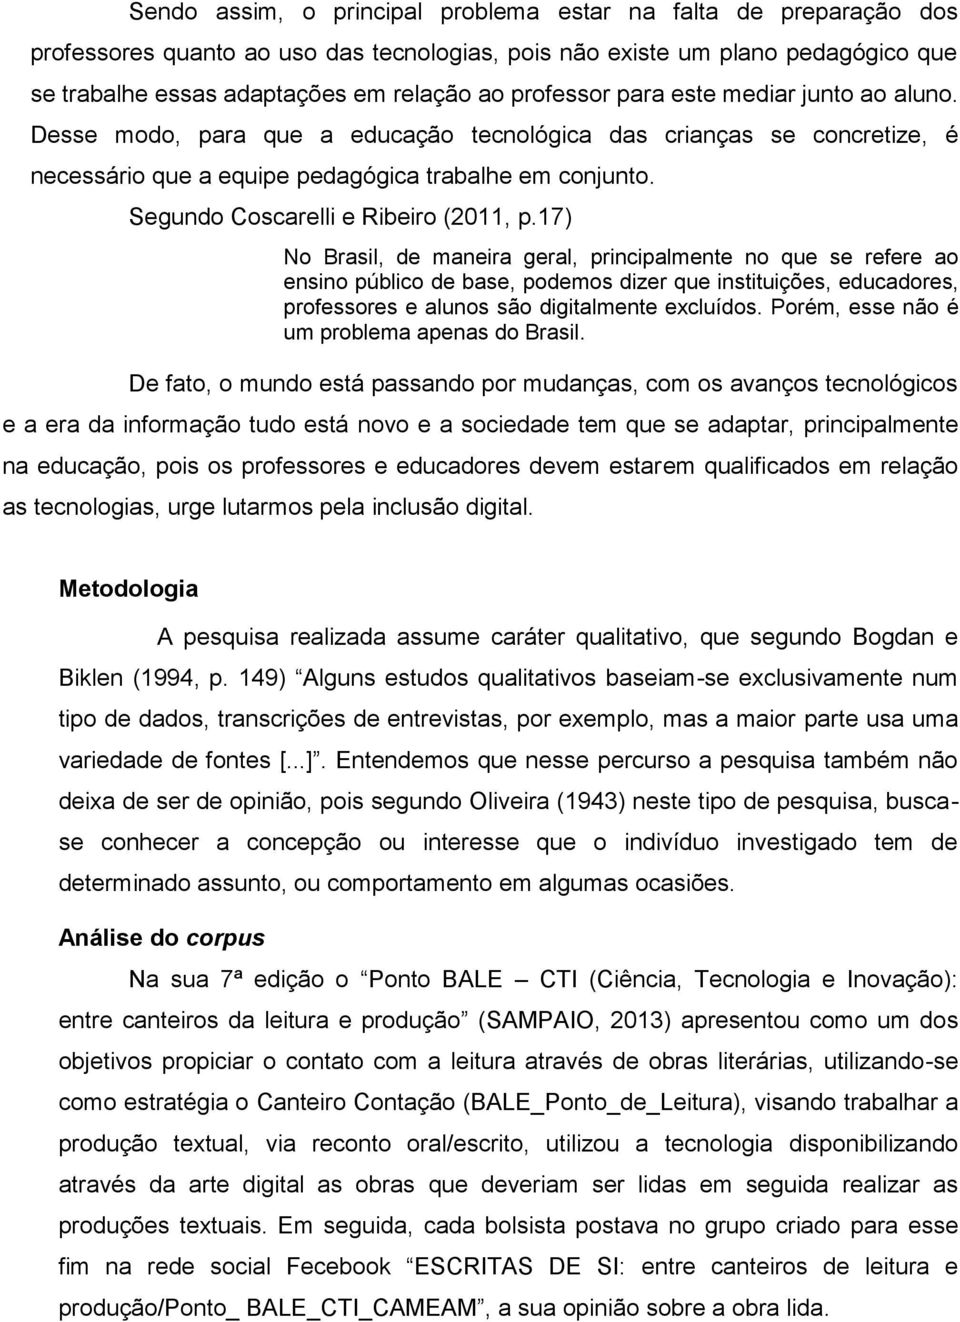 Segundo Coscarelli e Ribeiro (2011, p.